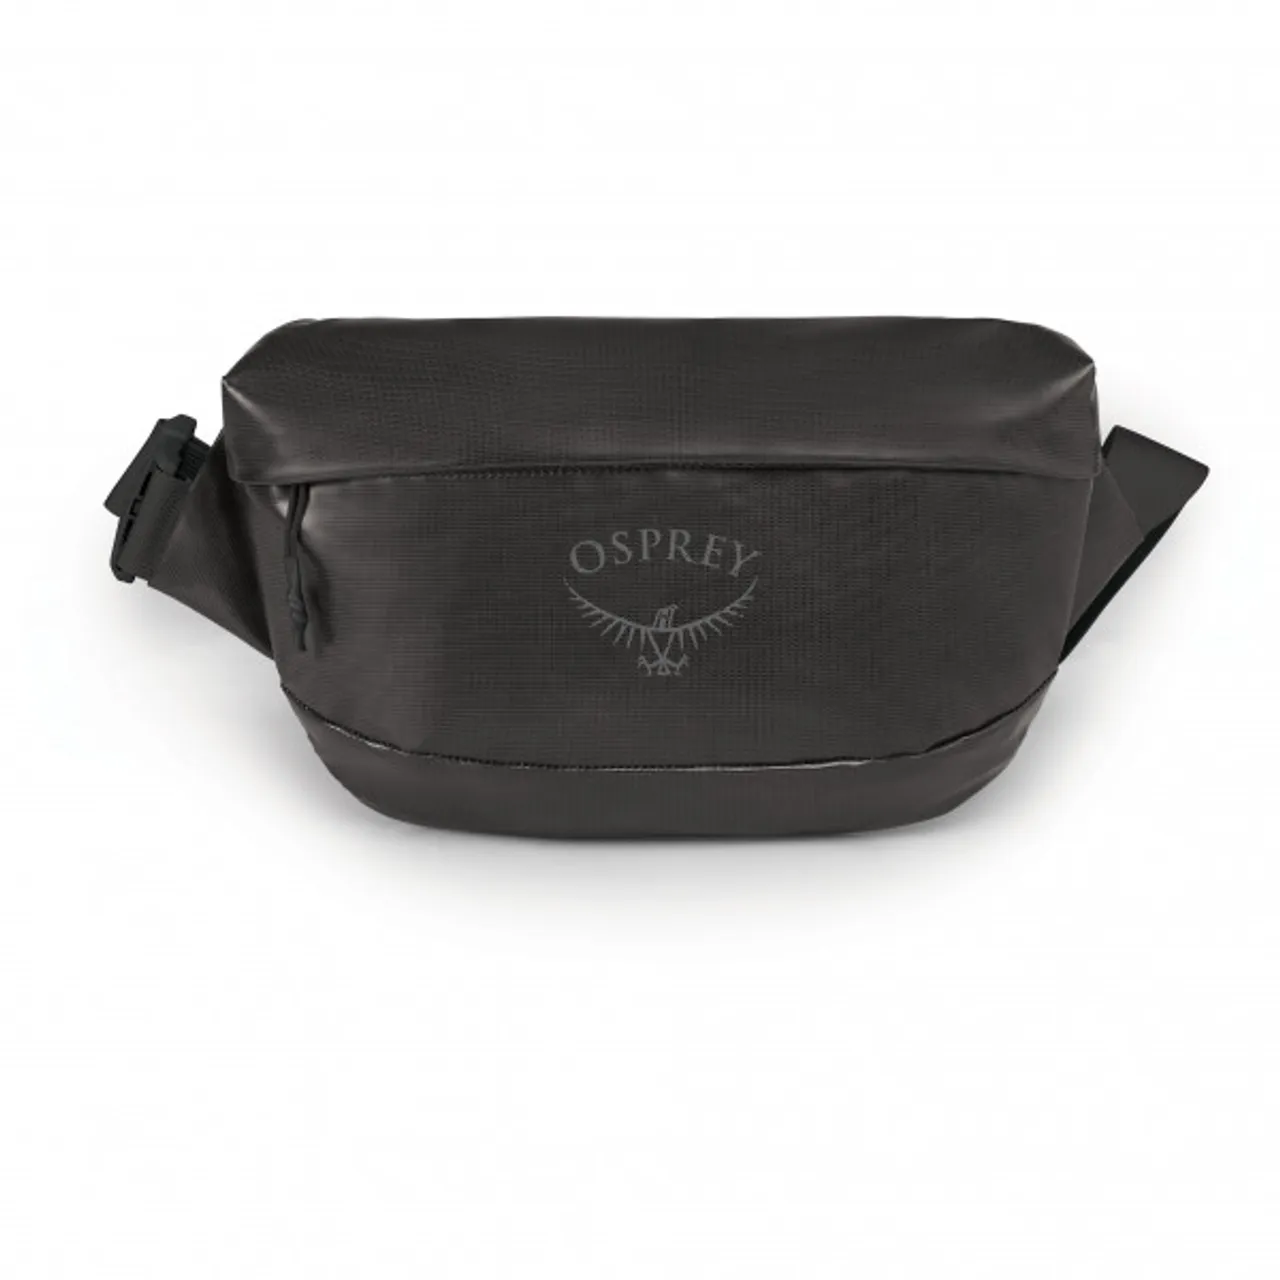 Osprey - Transporter Waist - Hip bag size 1 l, grey/black